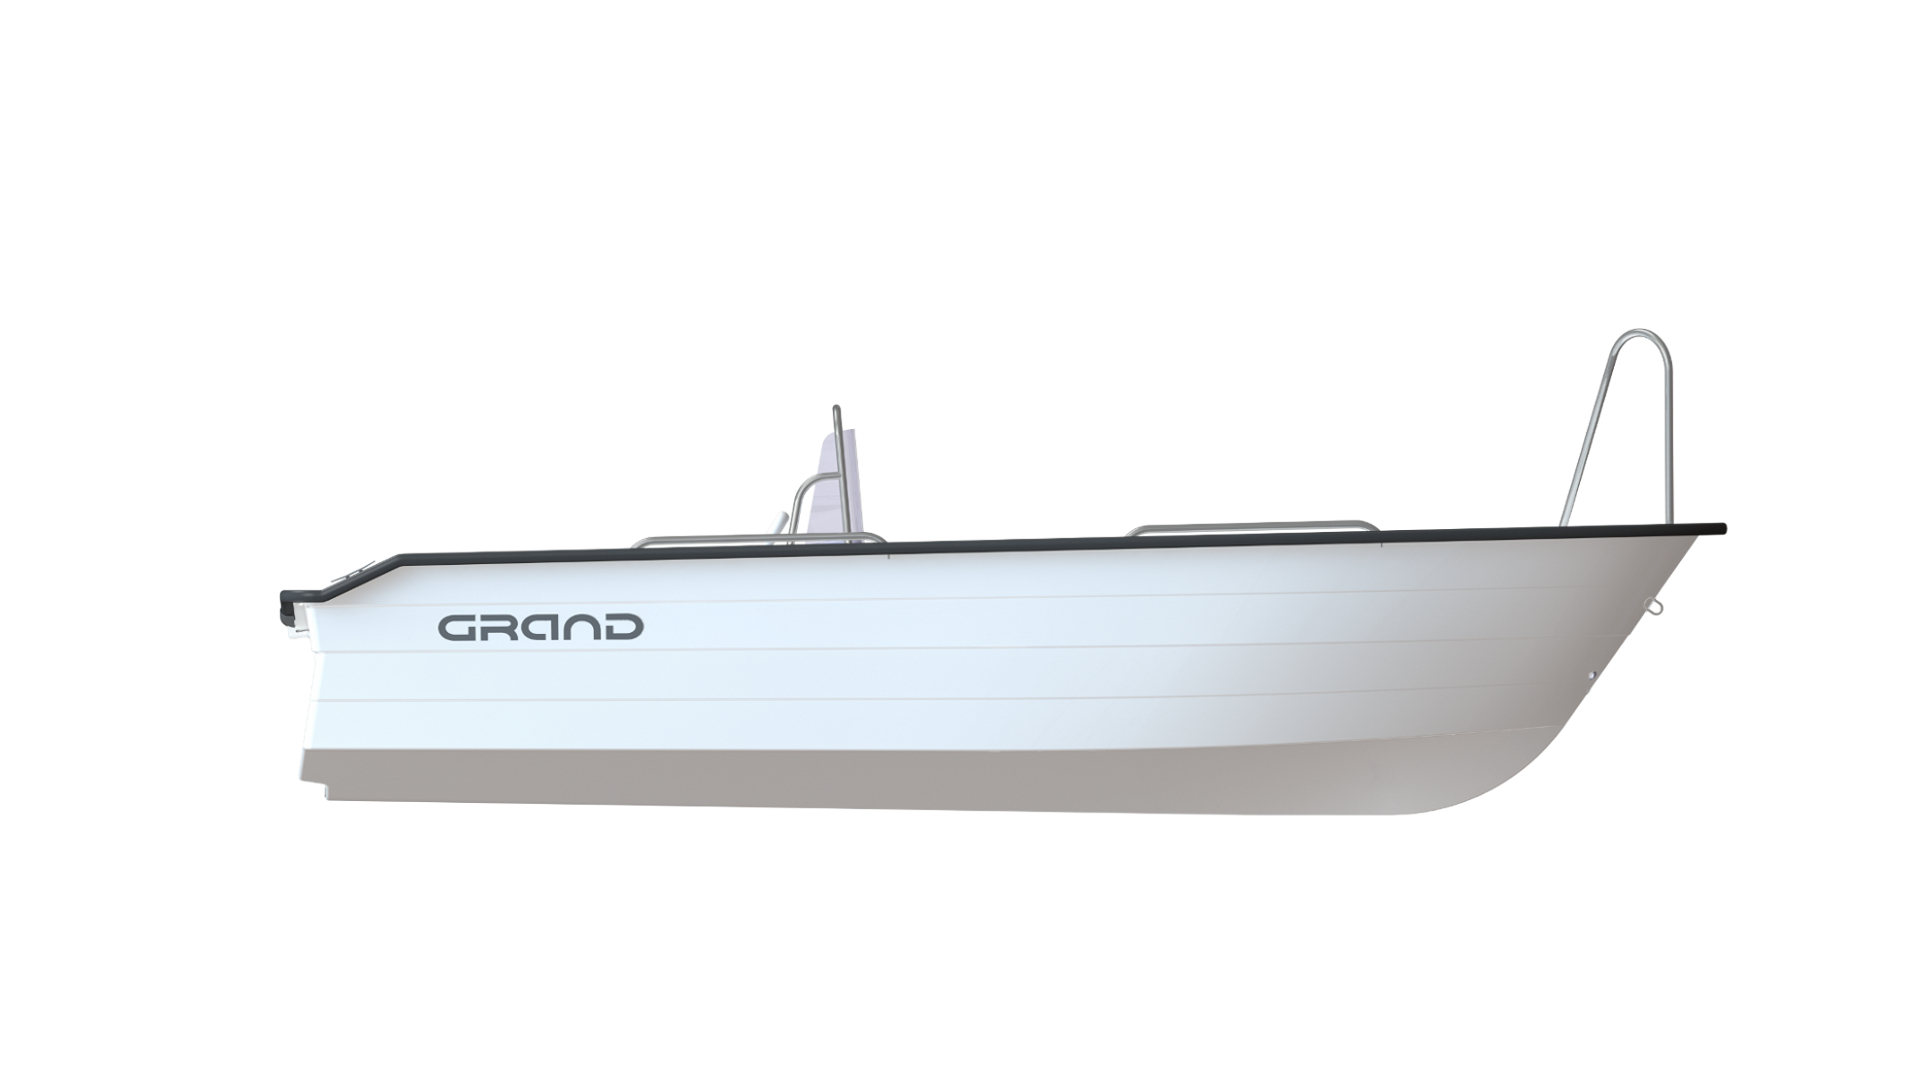 Стеклопластиковая моторная лодка GRAND Nautilus N440L, GRAND N440L, GRAND Nautilus, GRAND Nautilus N440L, Стеклопластиковая моторная лодка GRAND, Моторная лодка GRAND, Стеклопластиковая лодка GRAND, Лодка для рыбалки, Лодка для большой компании